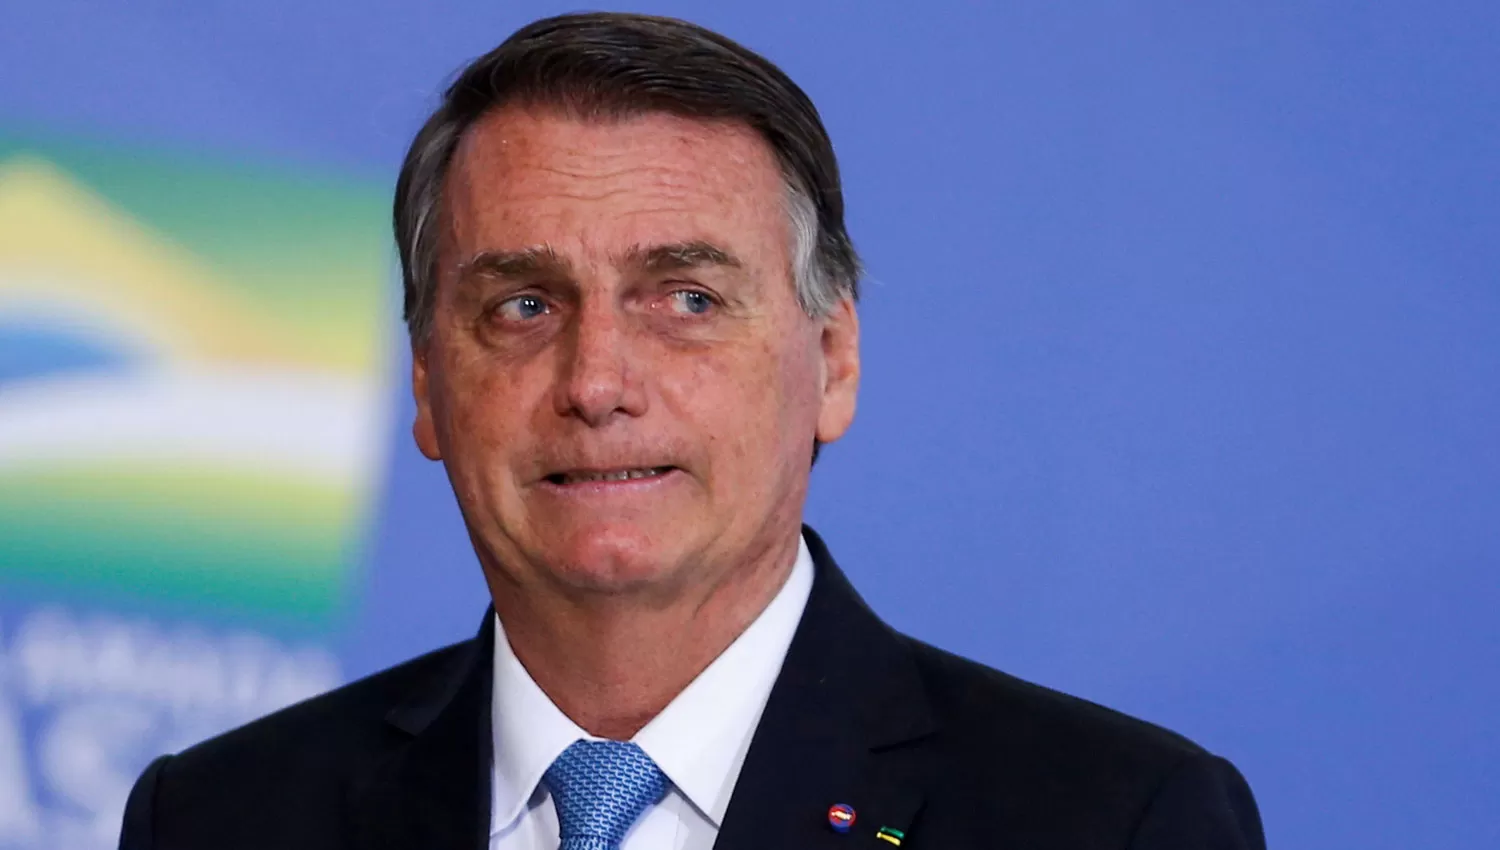 Bolsonaro bloqueó a periodistas críticos y a opositores en sus redes sociales